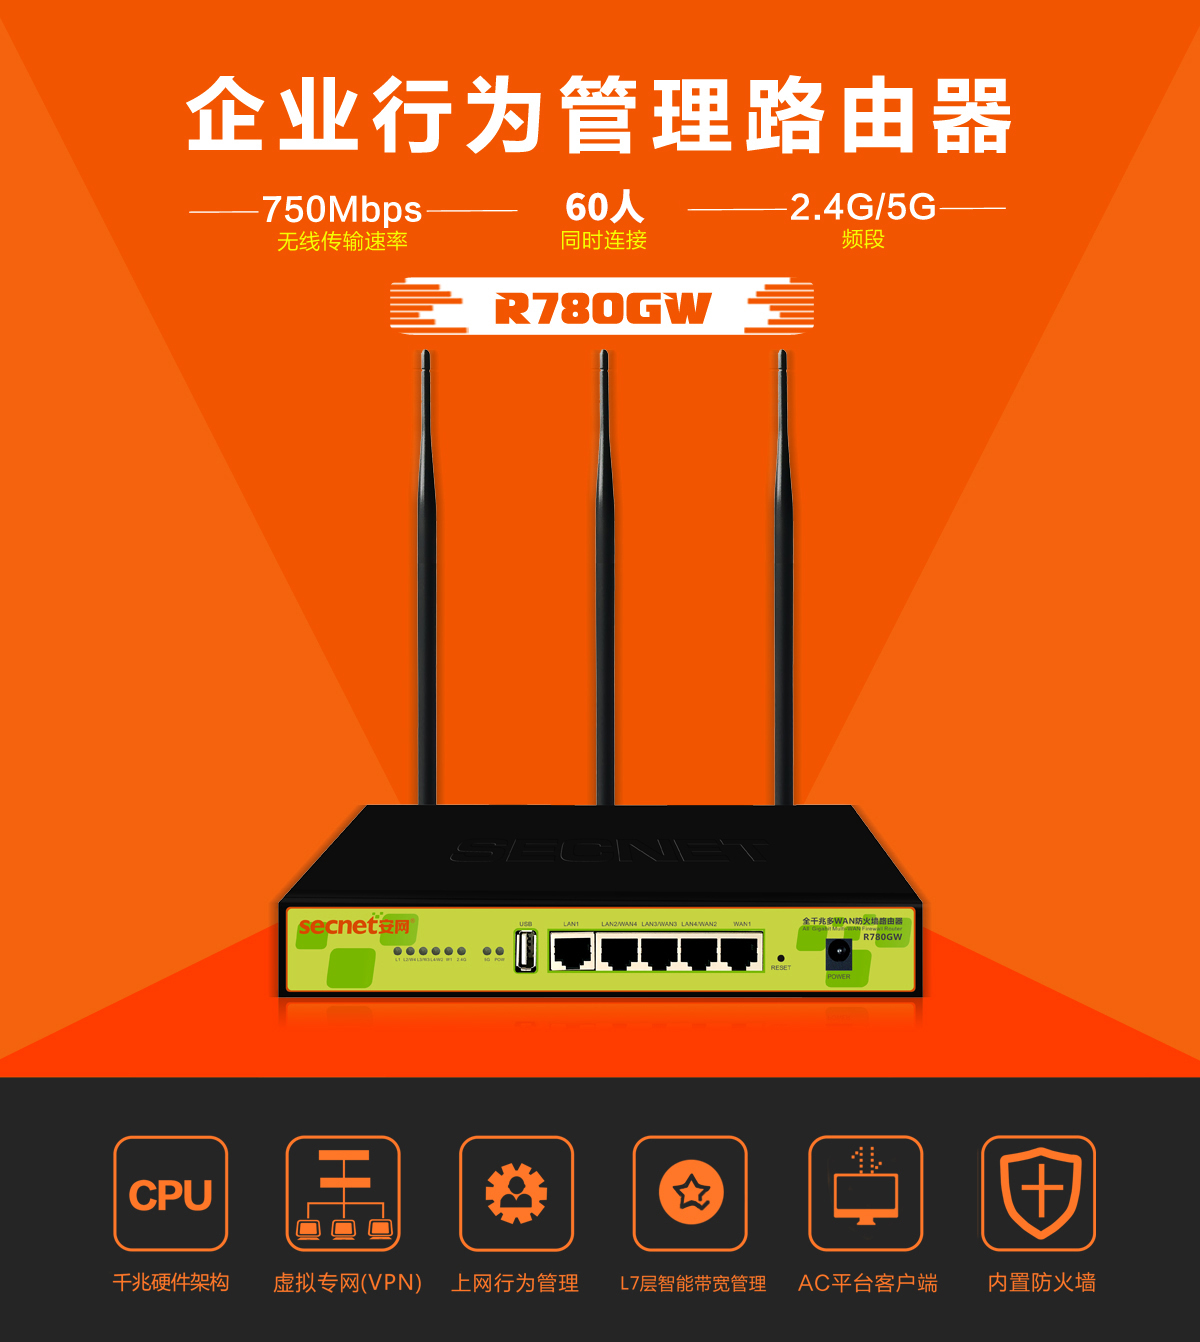 W20E 1350M 11AC双频千兆口企业级无线路由器_腾达(Tenda)官方网站